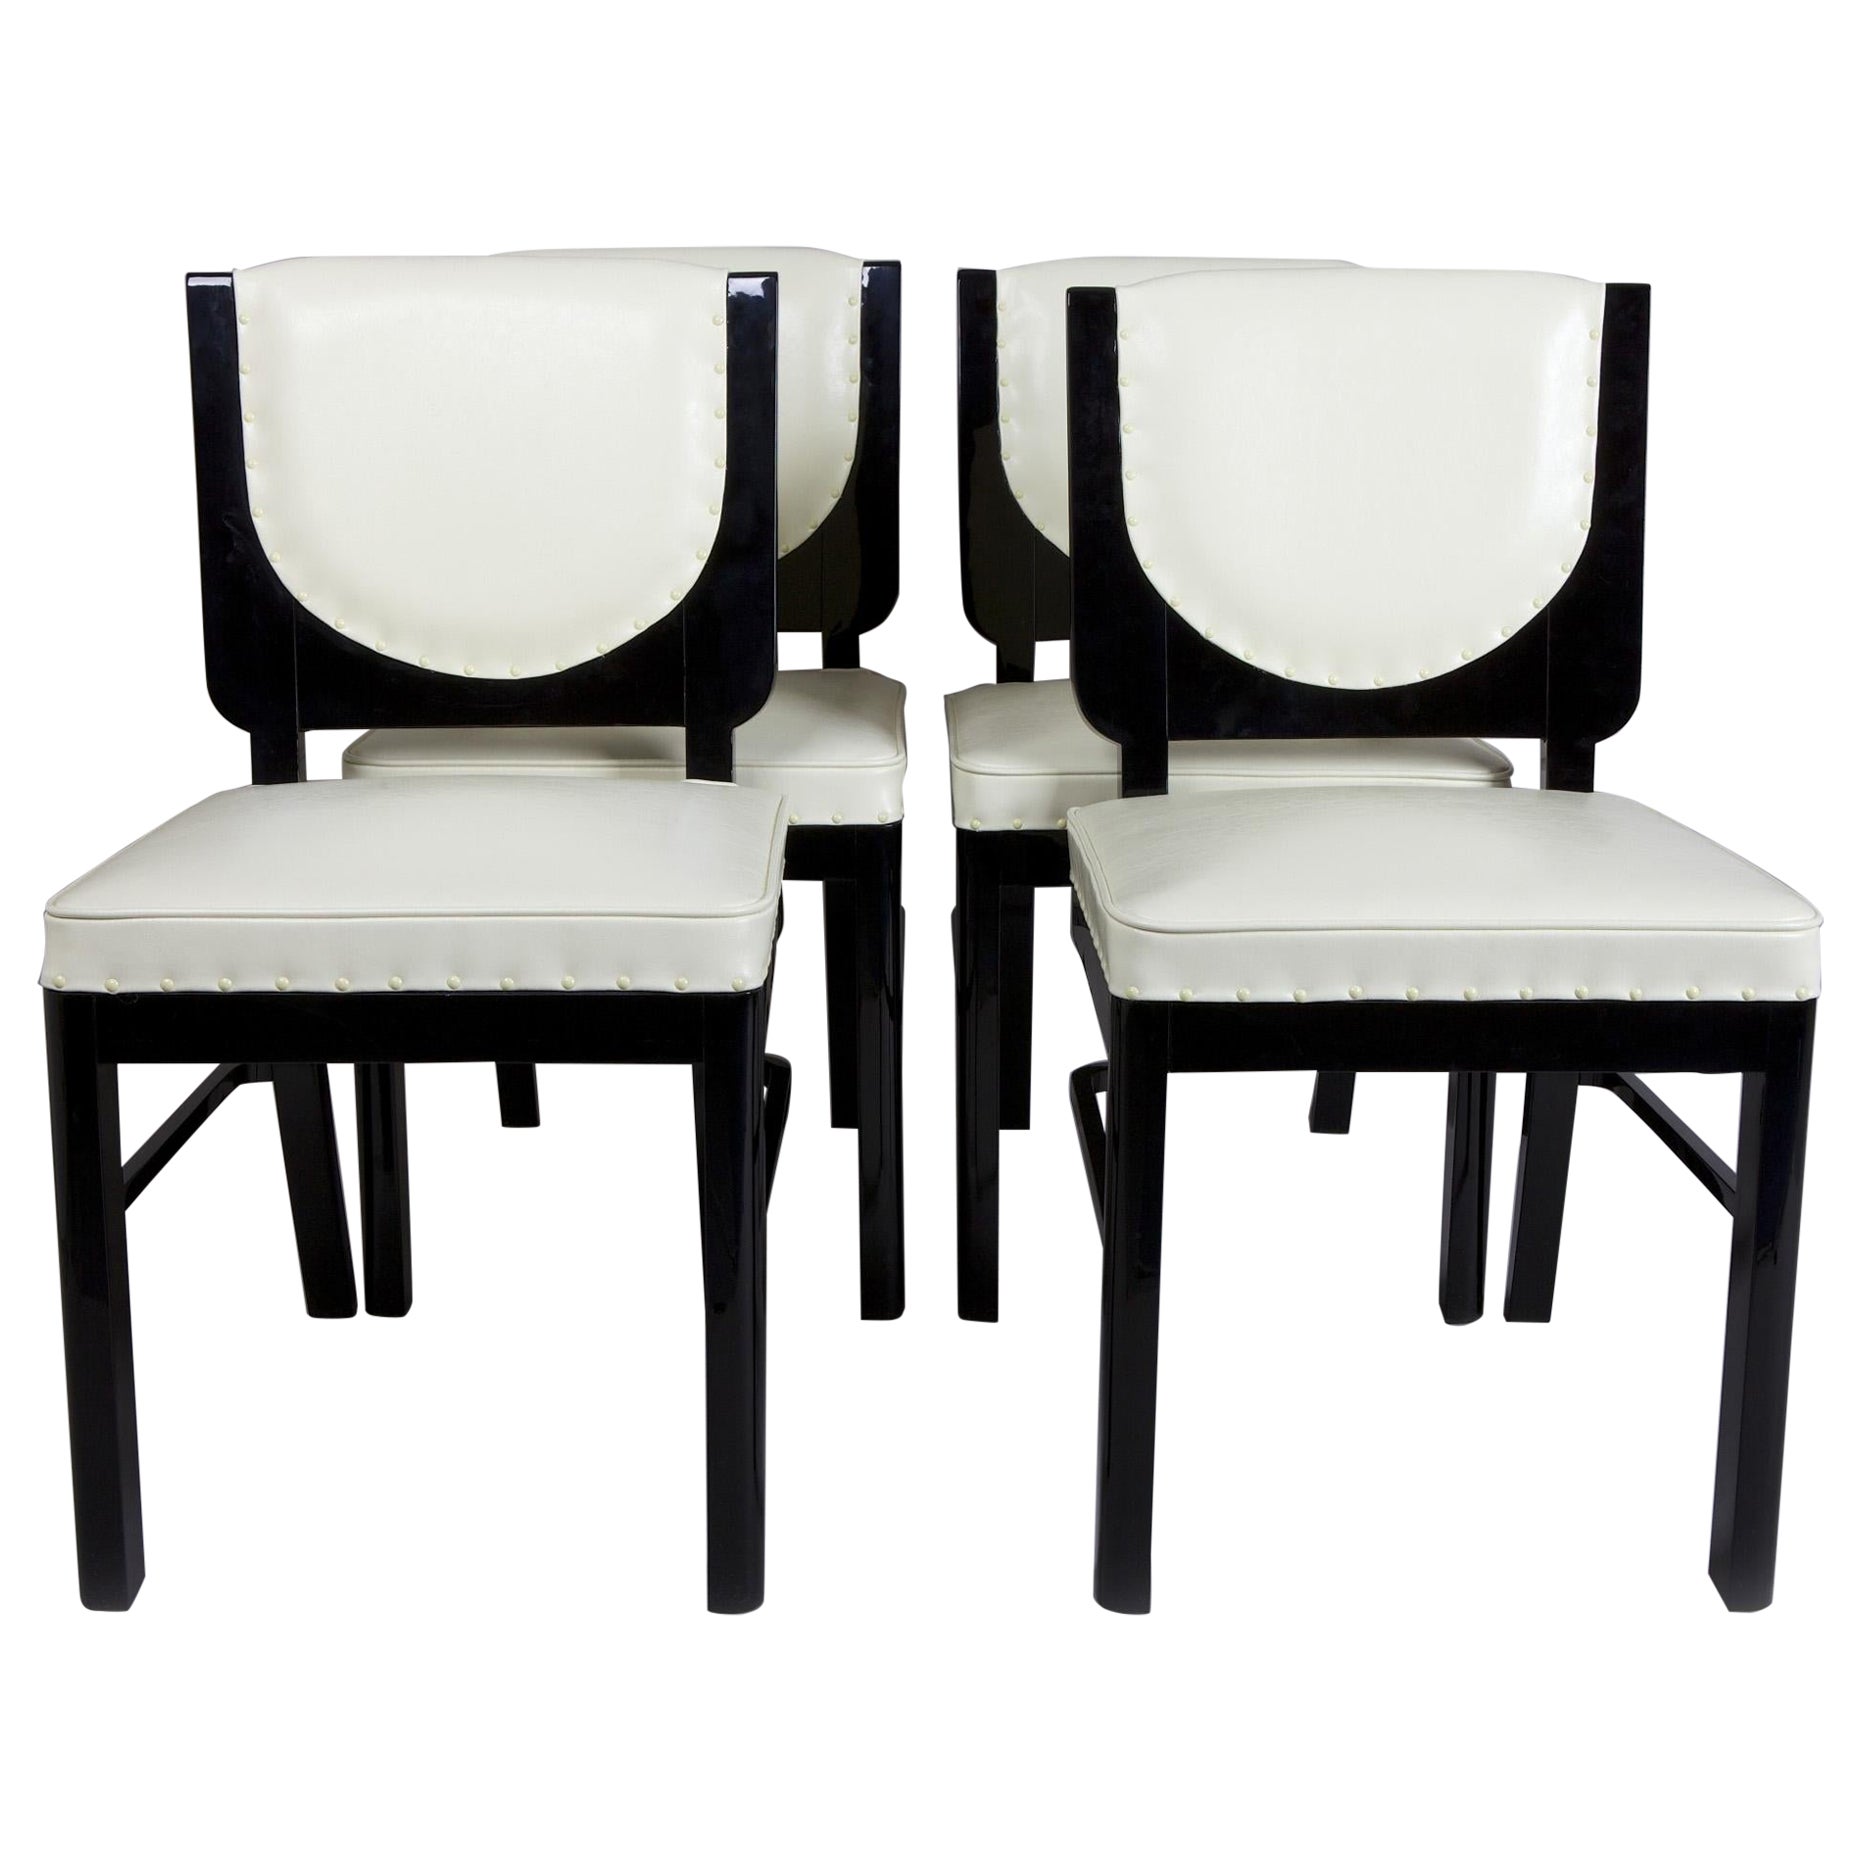 Ensemble de 4 chaises Art Déco françaises fabriquées dans les années 1920, entièrement restaurées, en ébène